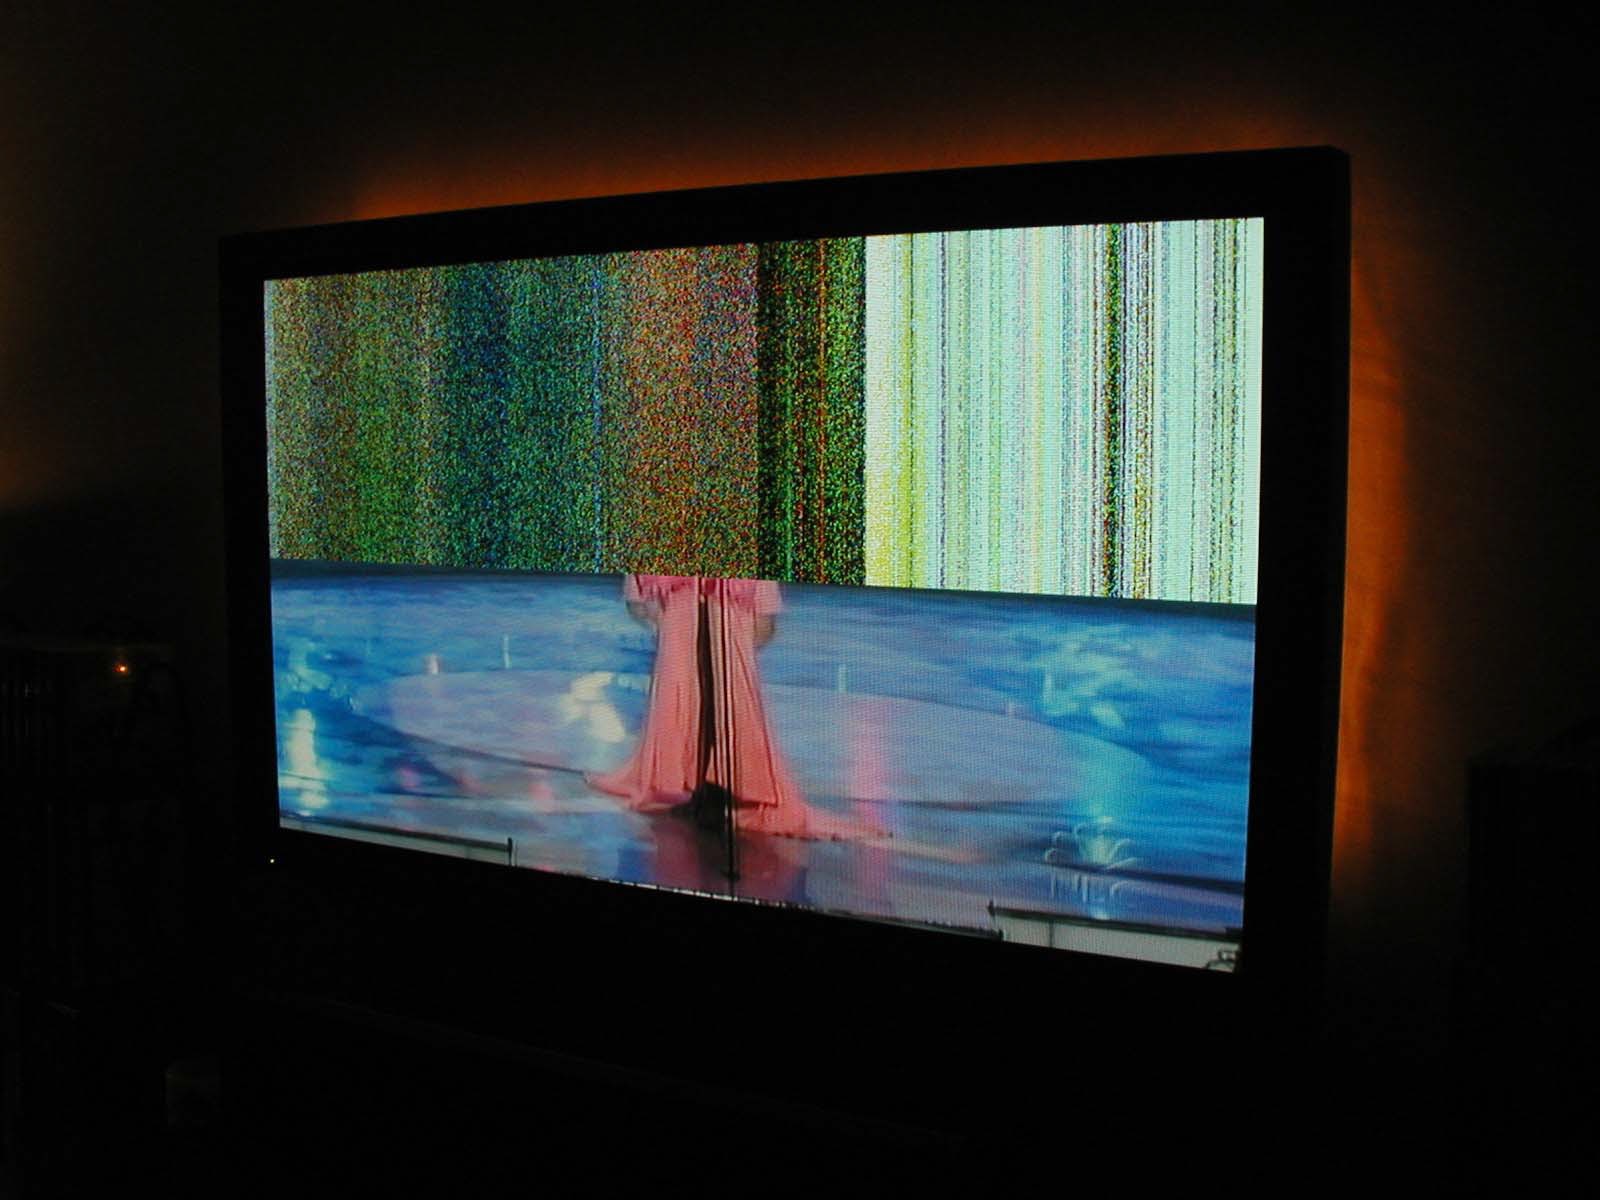 Показ экрана на телевизоре